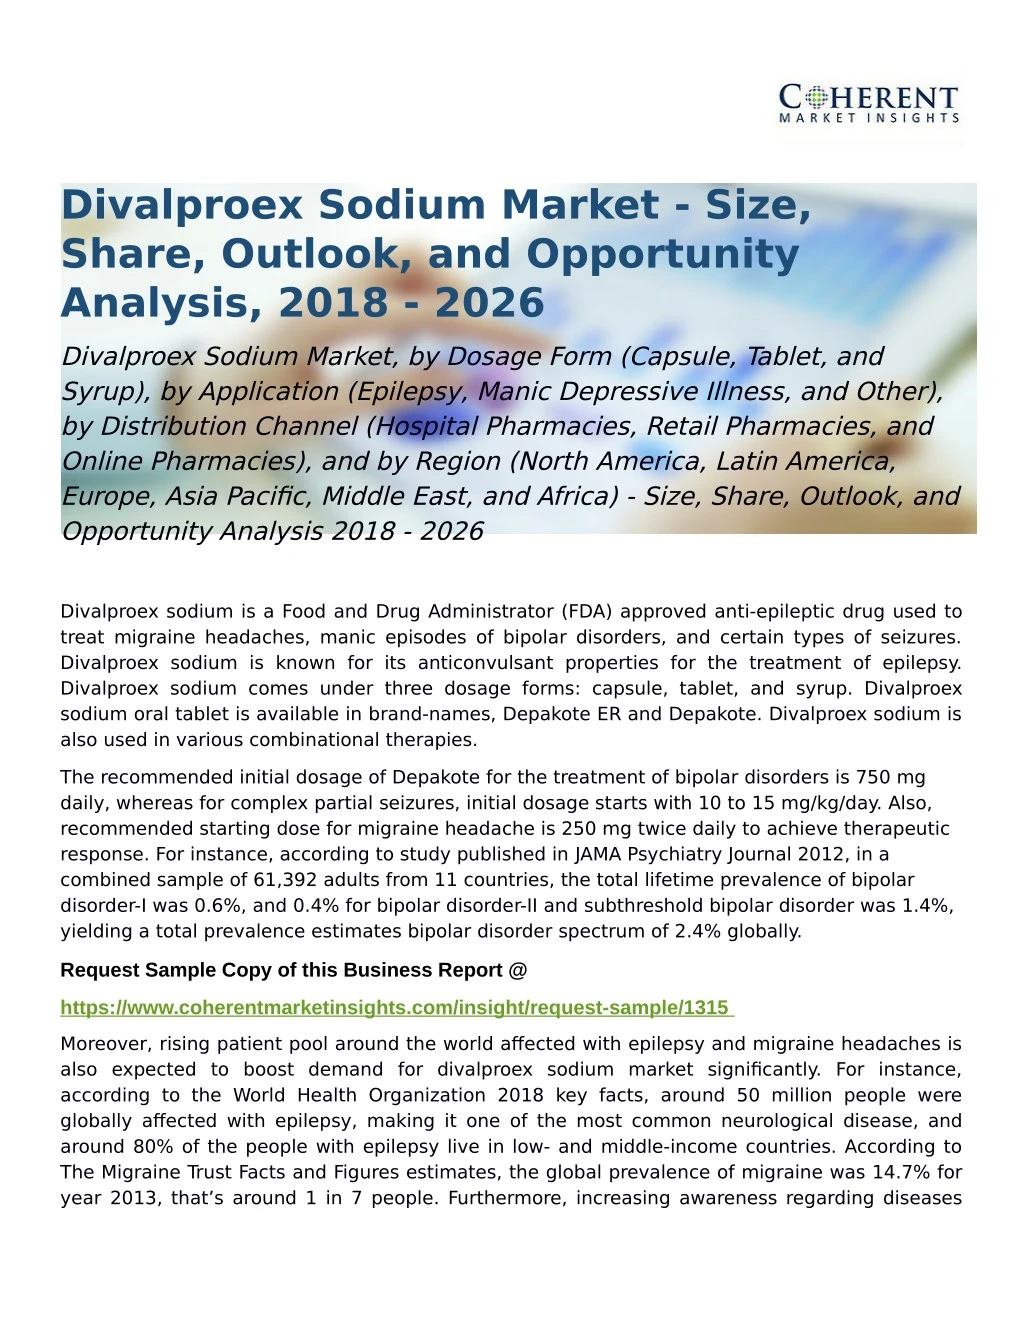 divalproex sodium market size share outlook